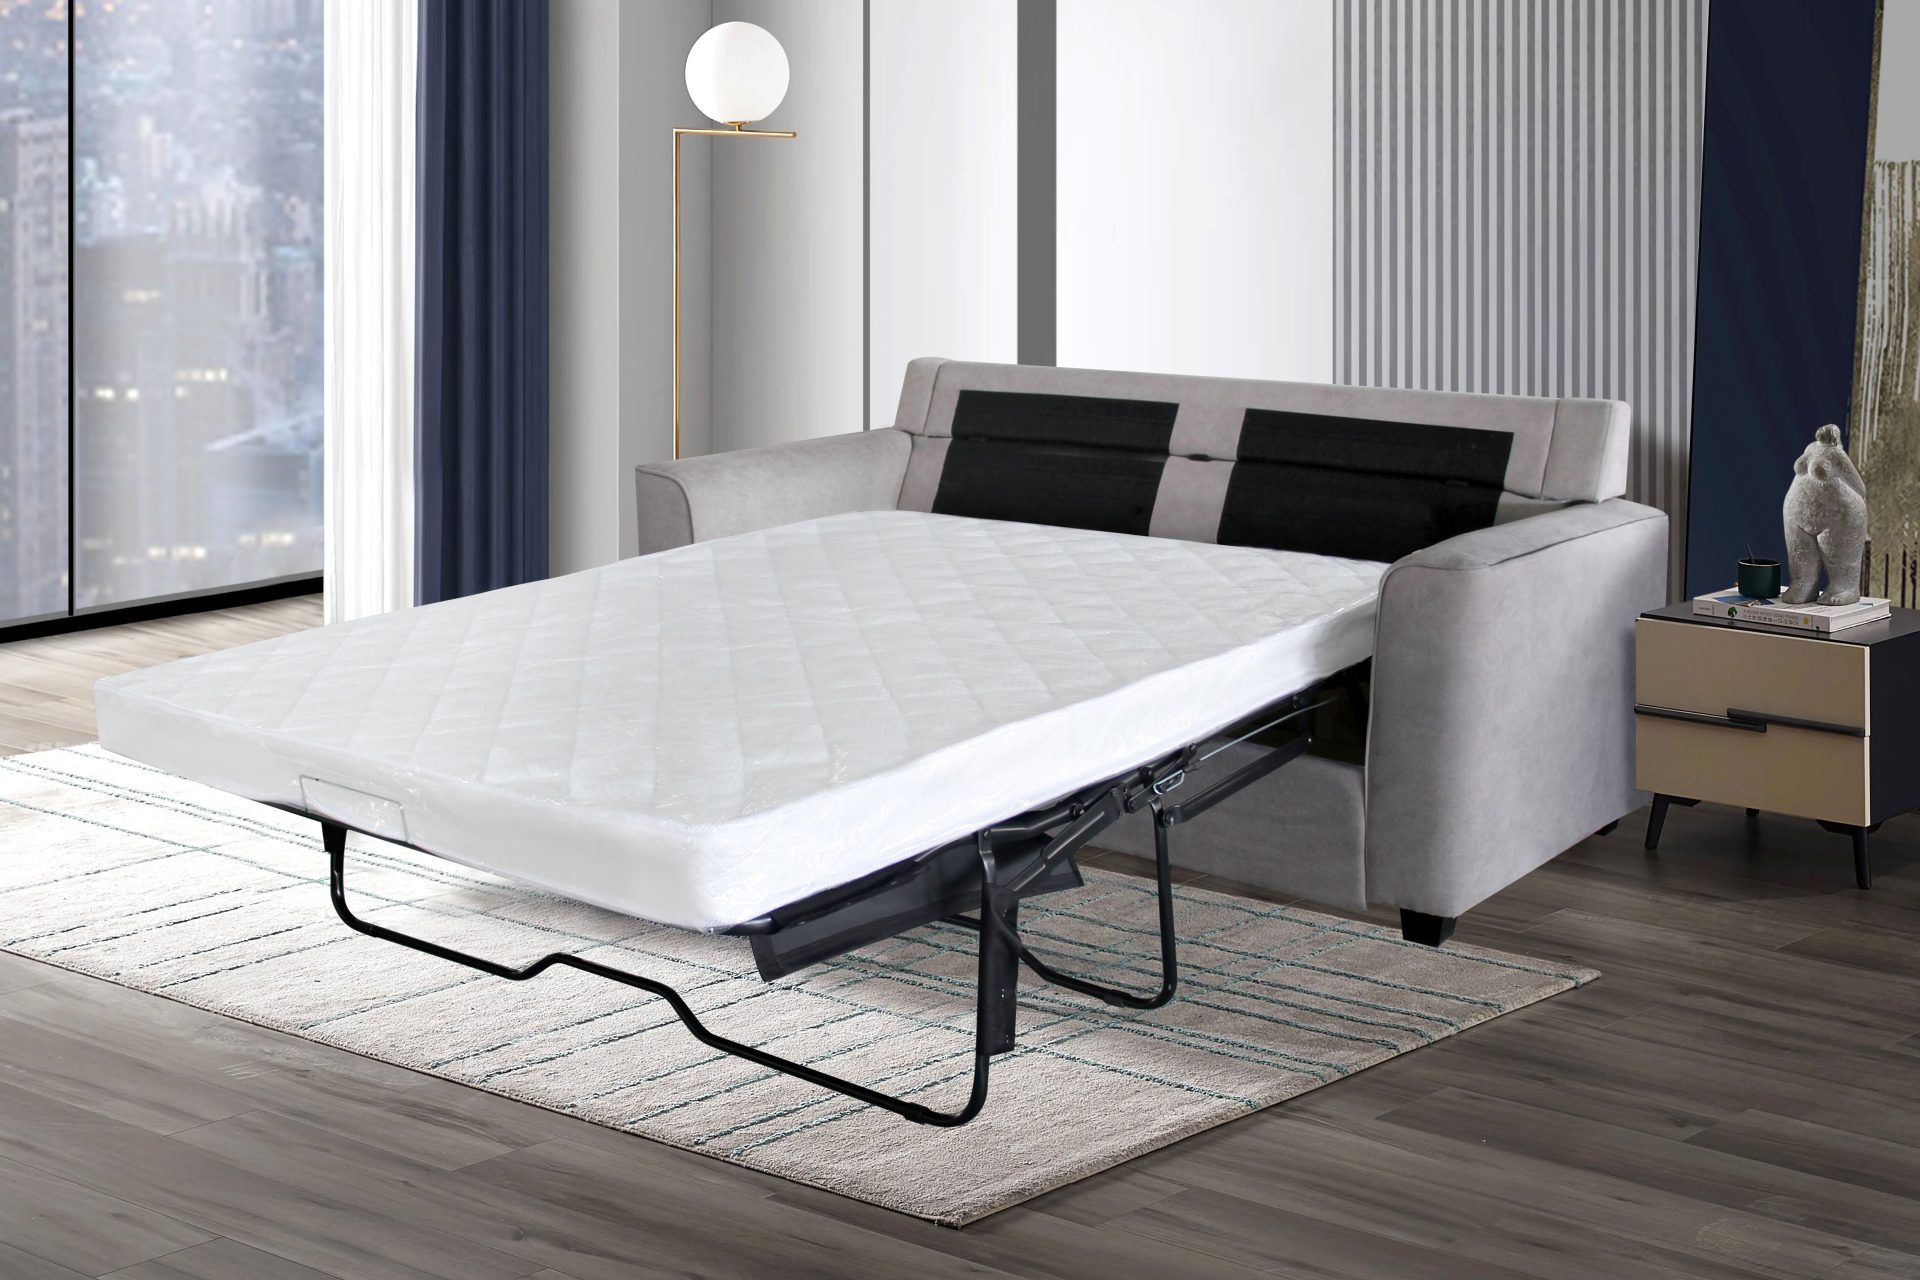 Helena Sofa bed - HJ furniture